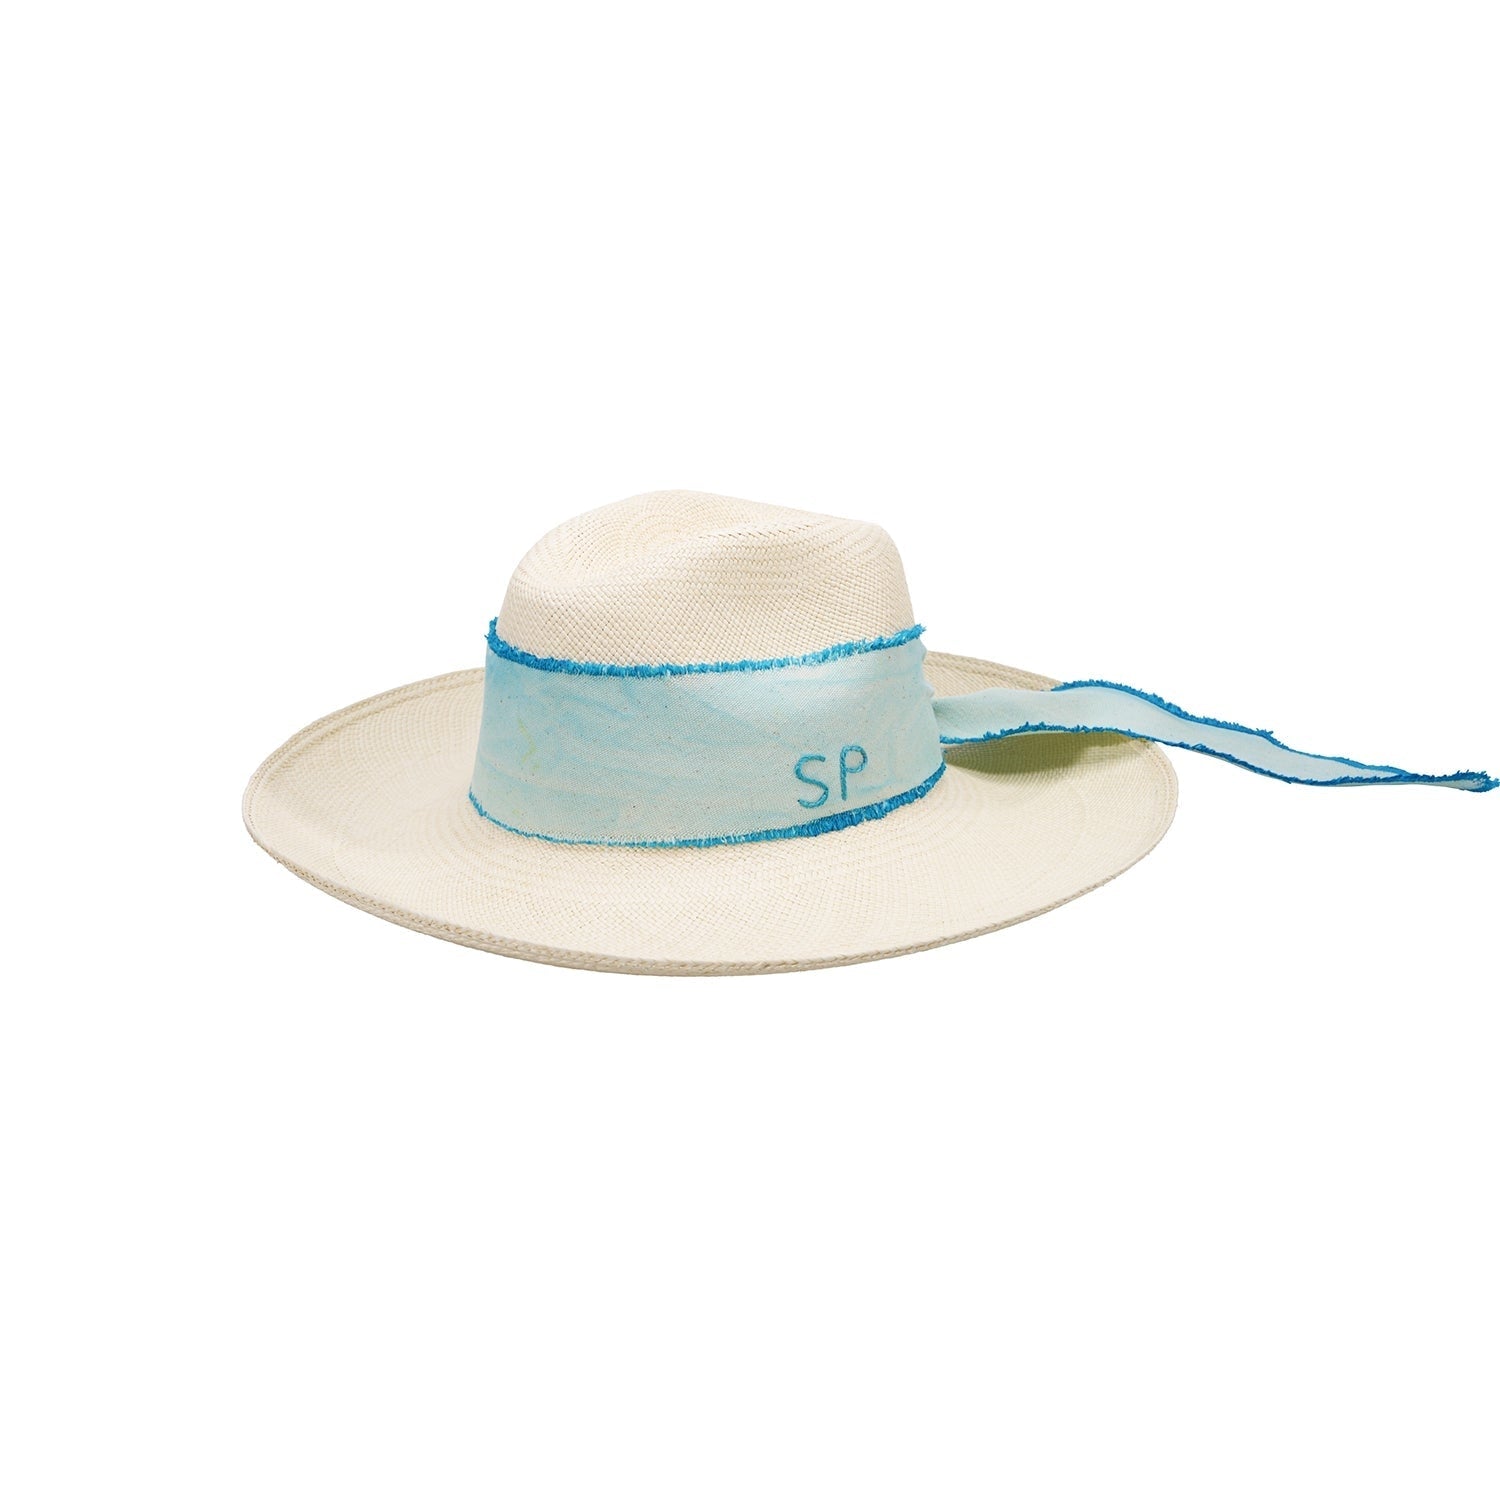 Izu - Clasico Custom Initials Hat artesano